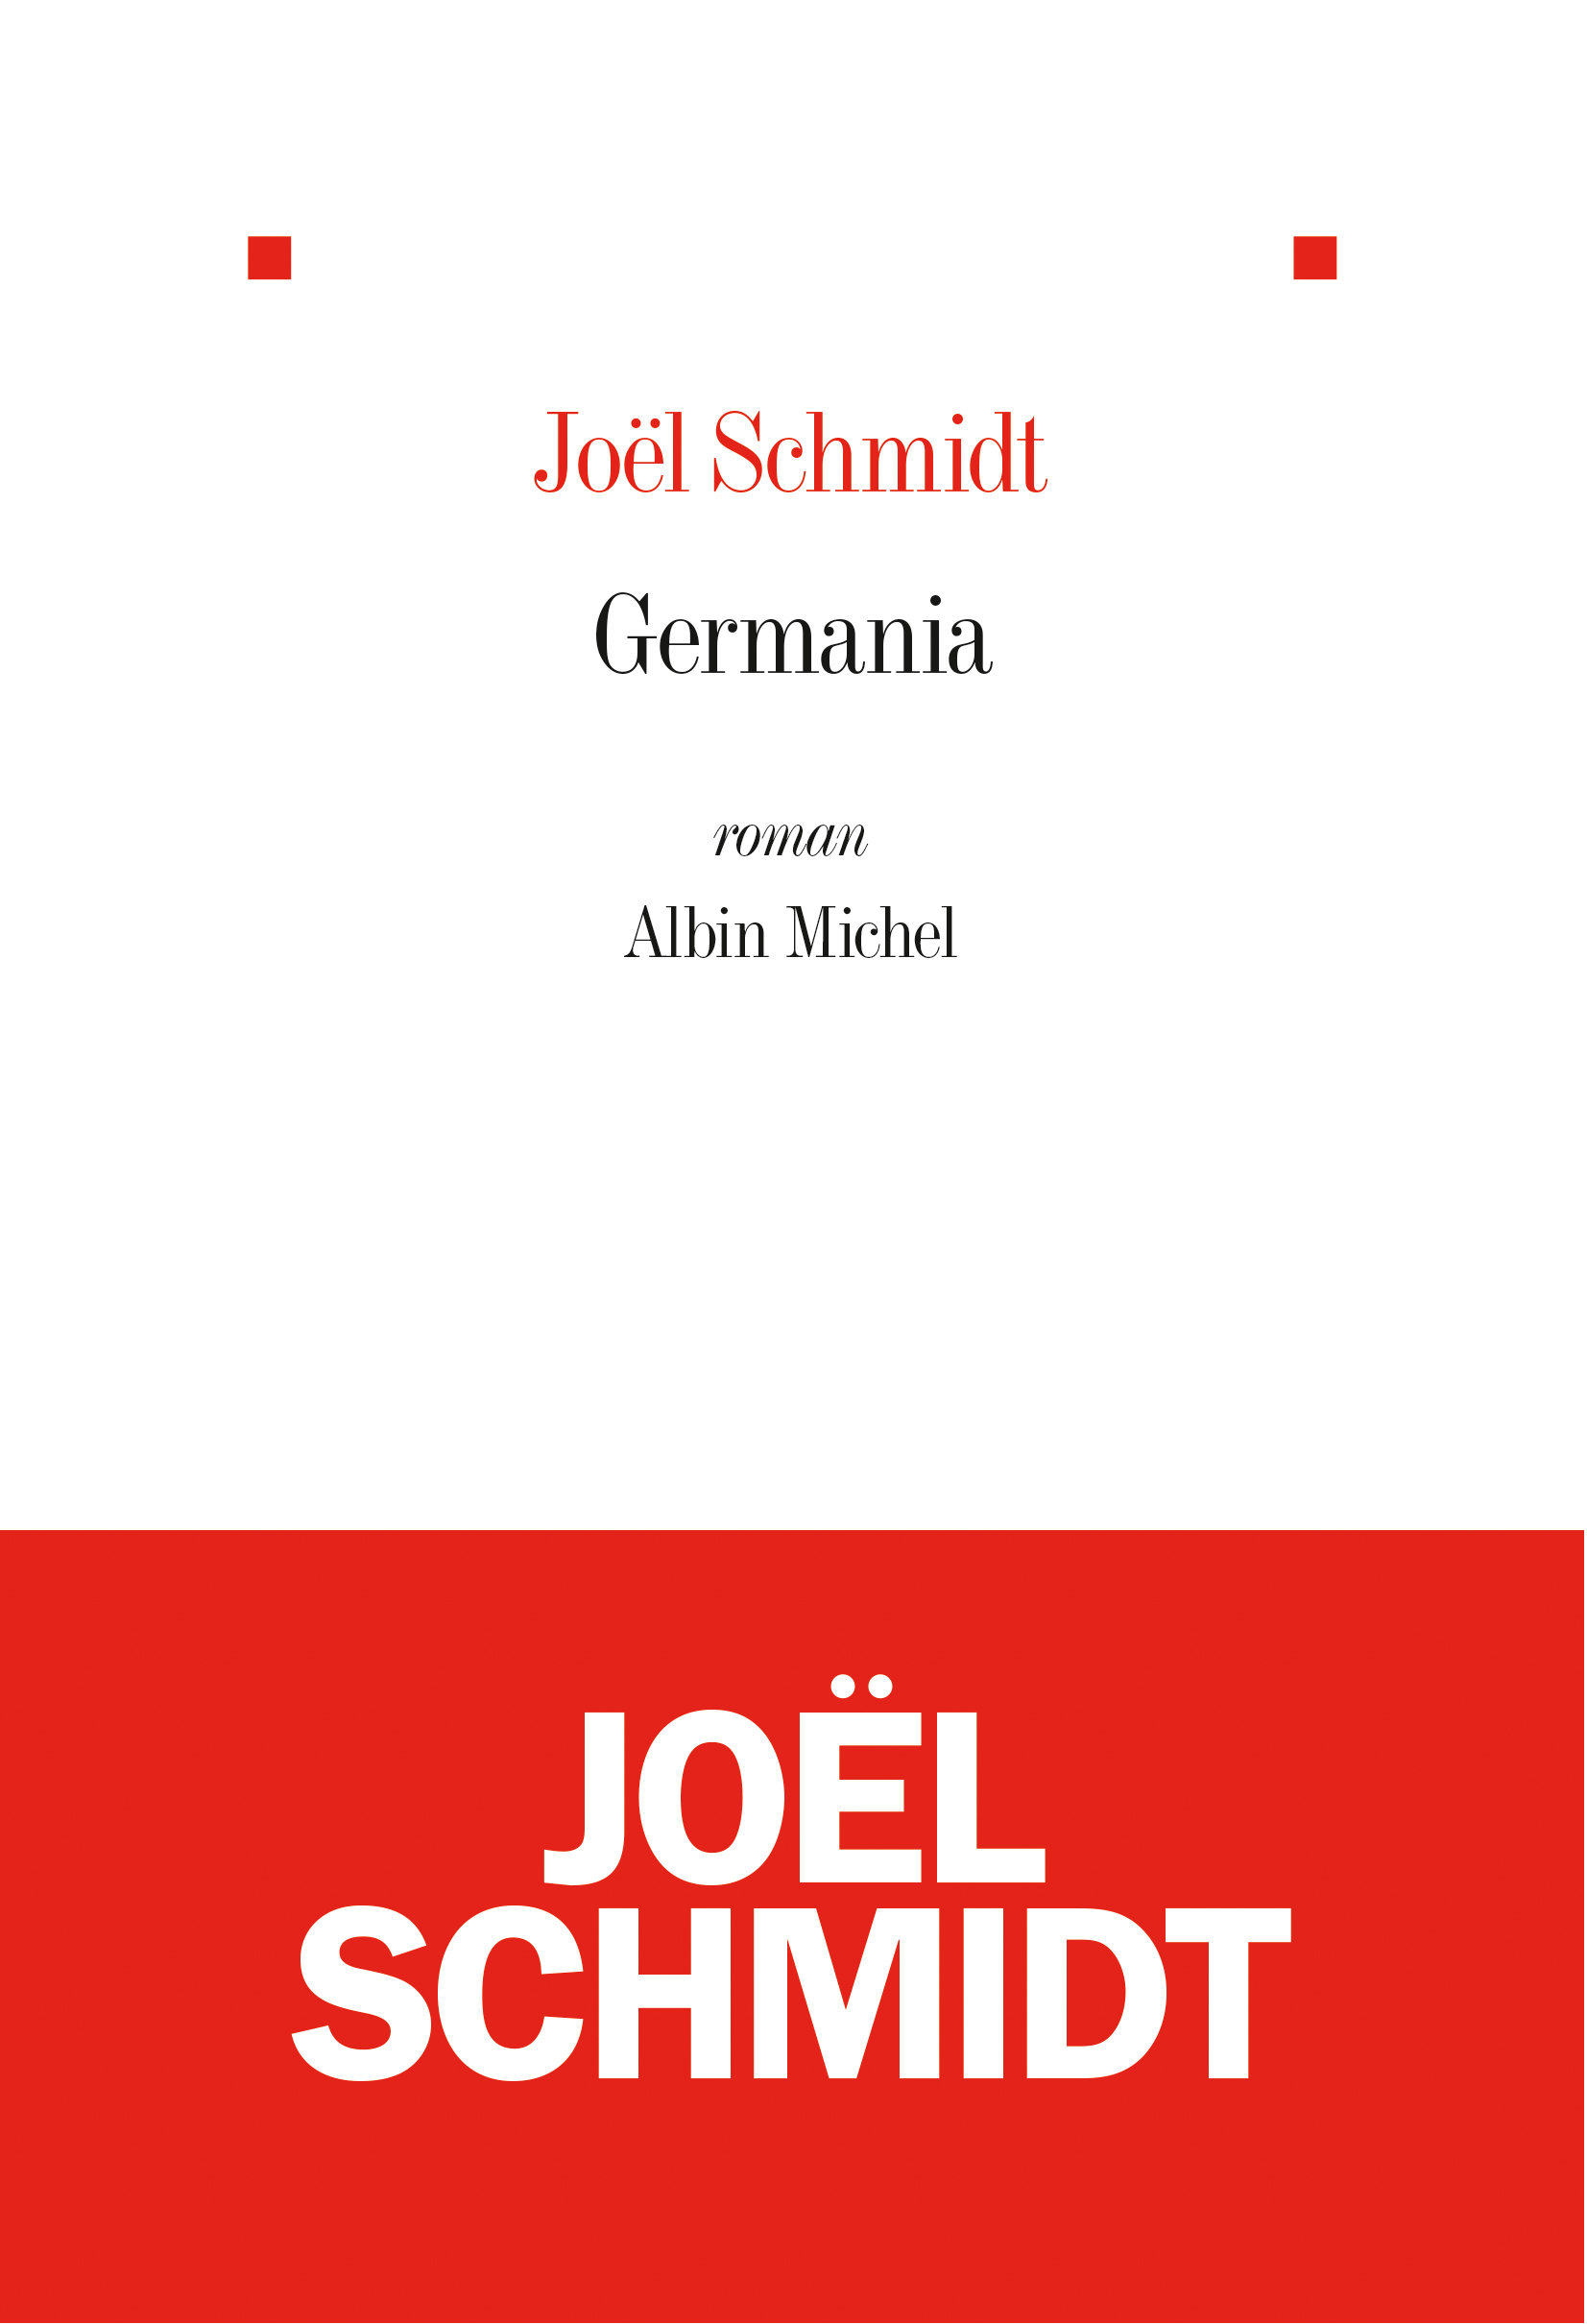 Couverture du livre Germania